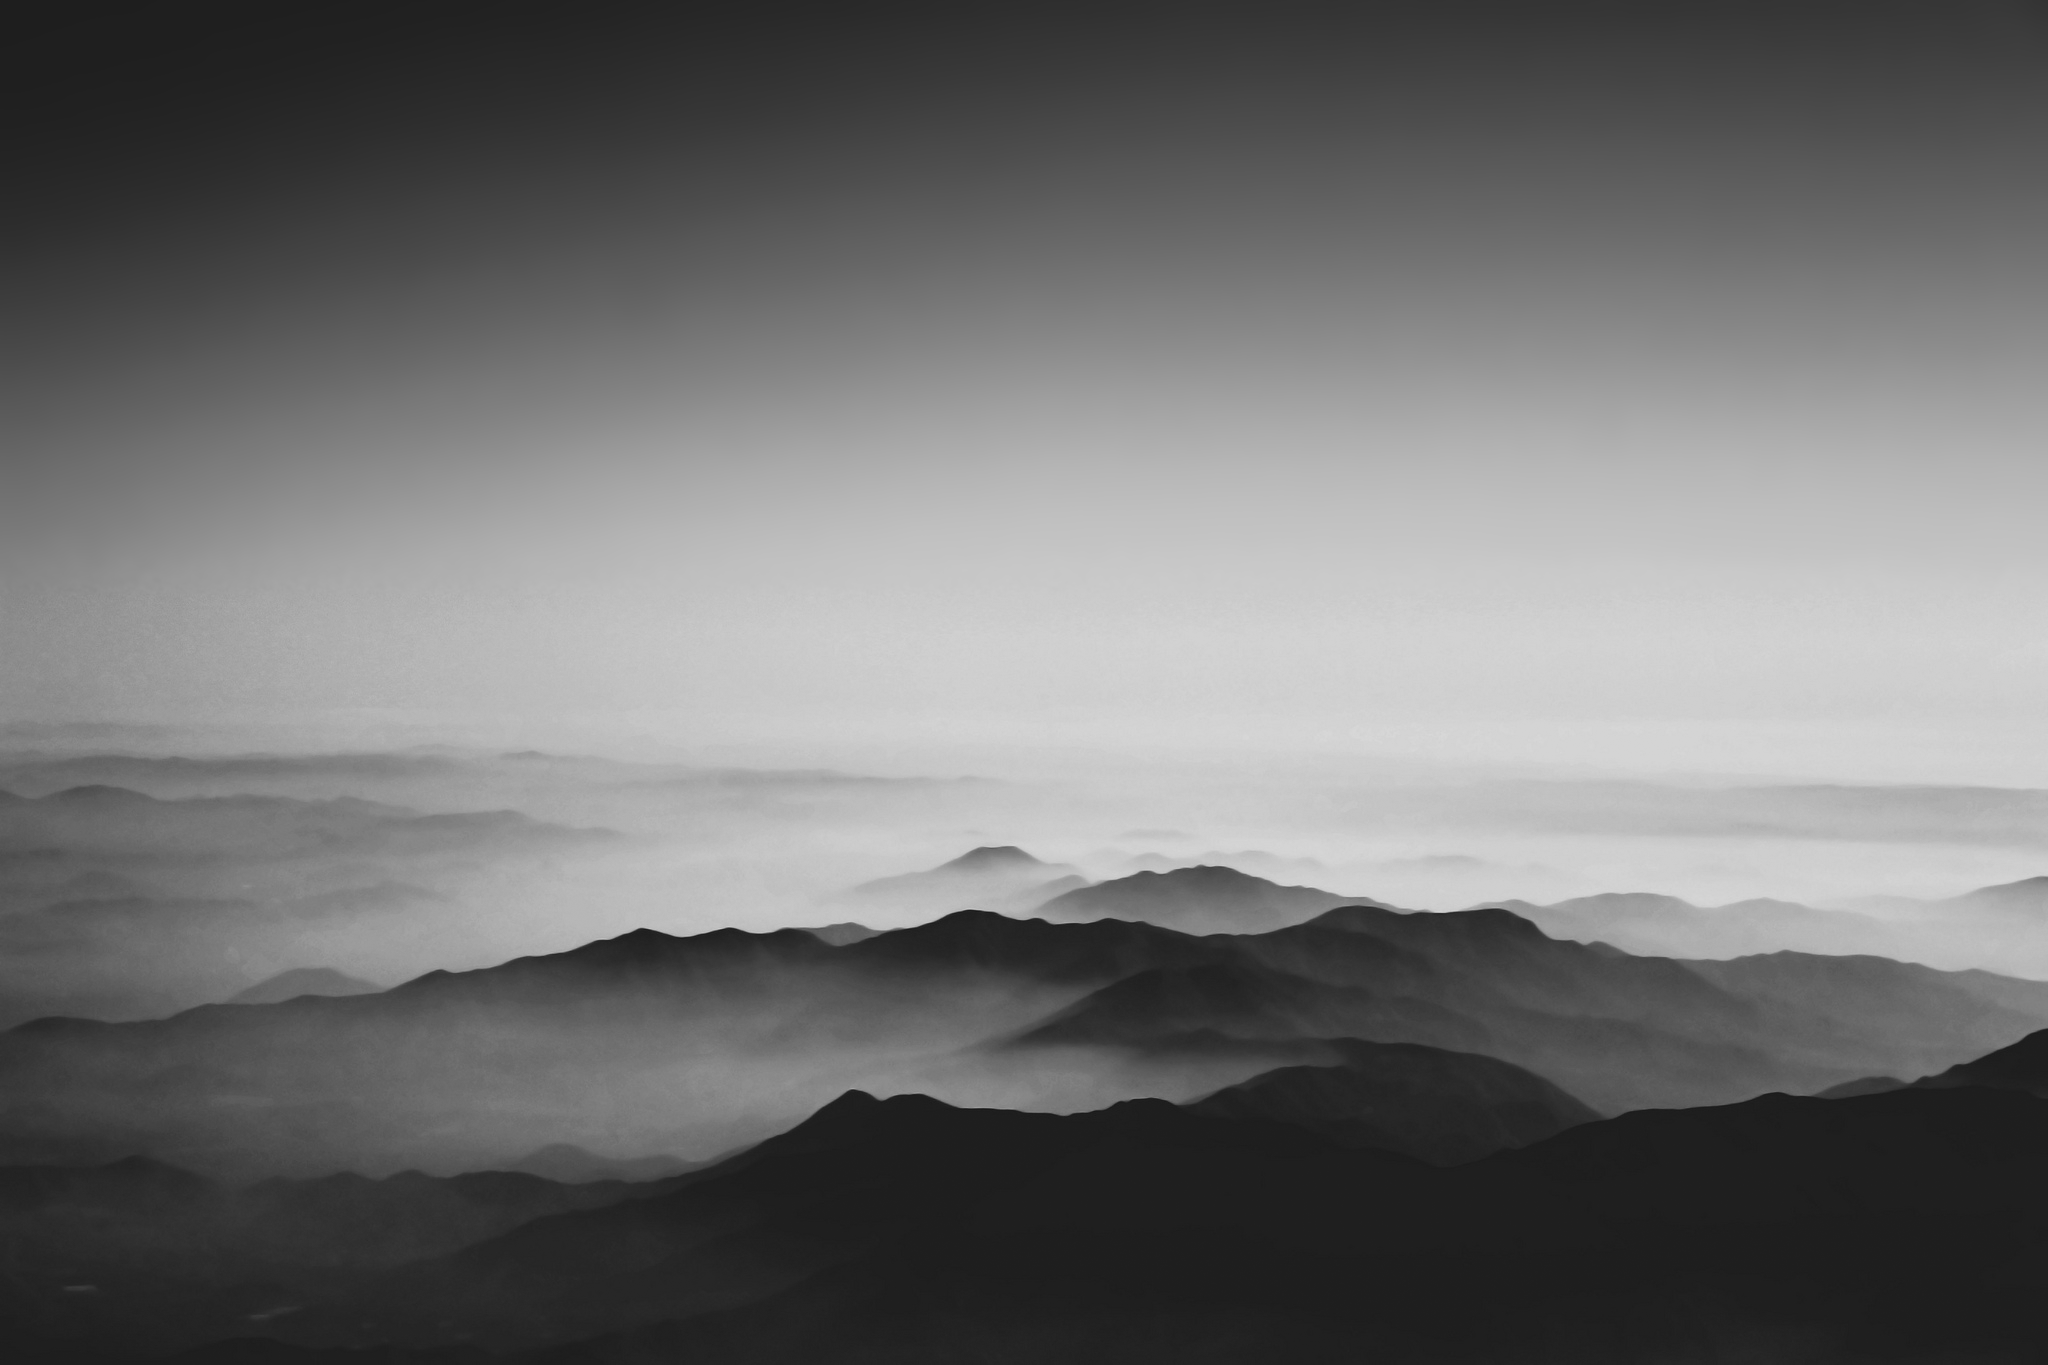 General 2048x1365 photography nature landscape mountains monochrome mist